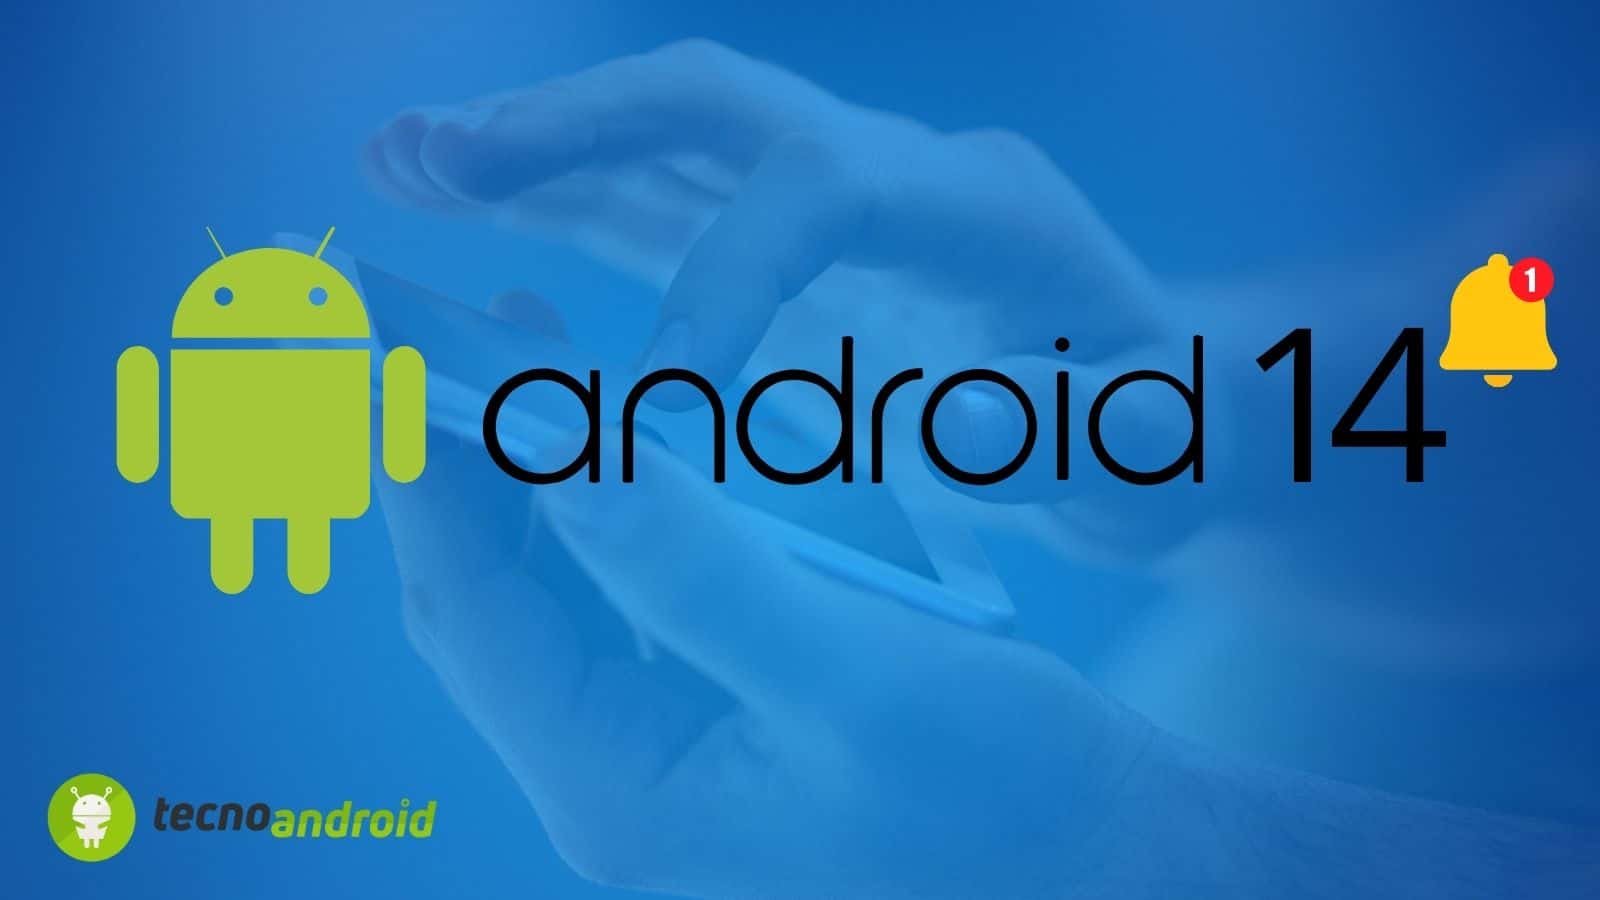 Android 14: novità aggiunte da Google e correzioni dei Bug